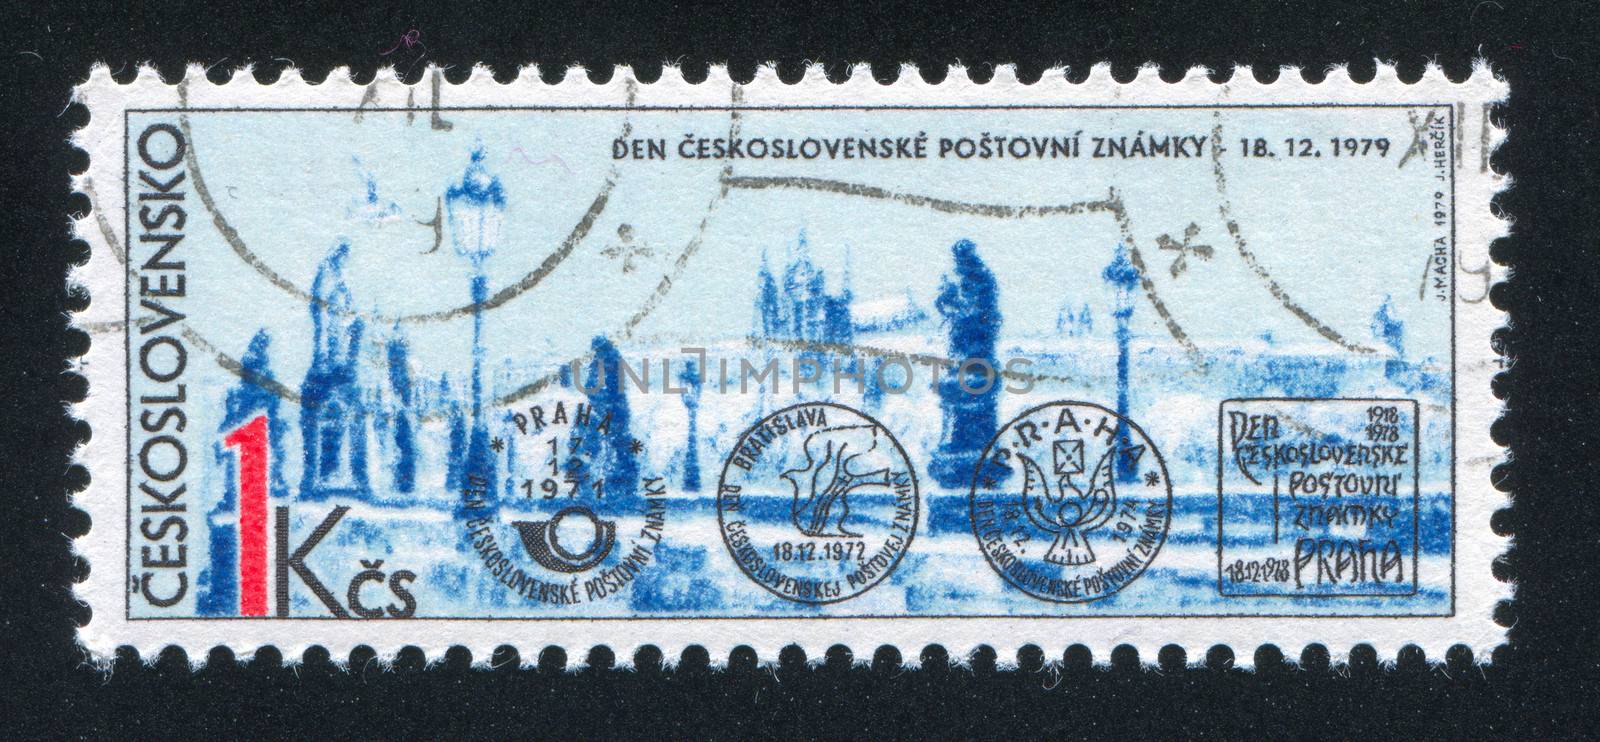 CZECHOSLOVAKIA - CIRCA 1979: stamp printed by Czechoslovakia, shows Prague, circa 1979